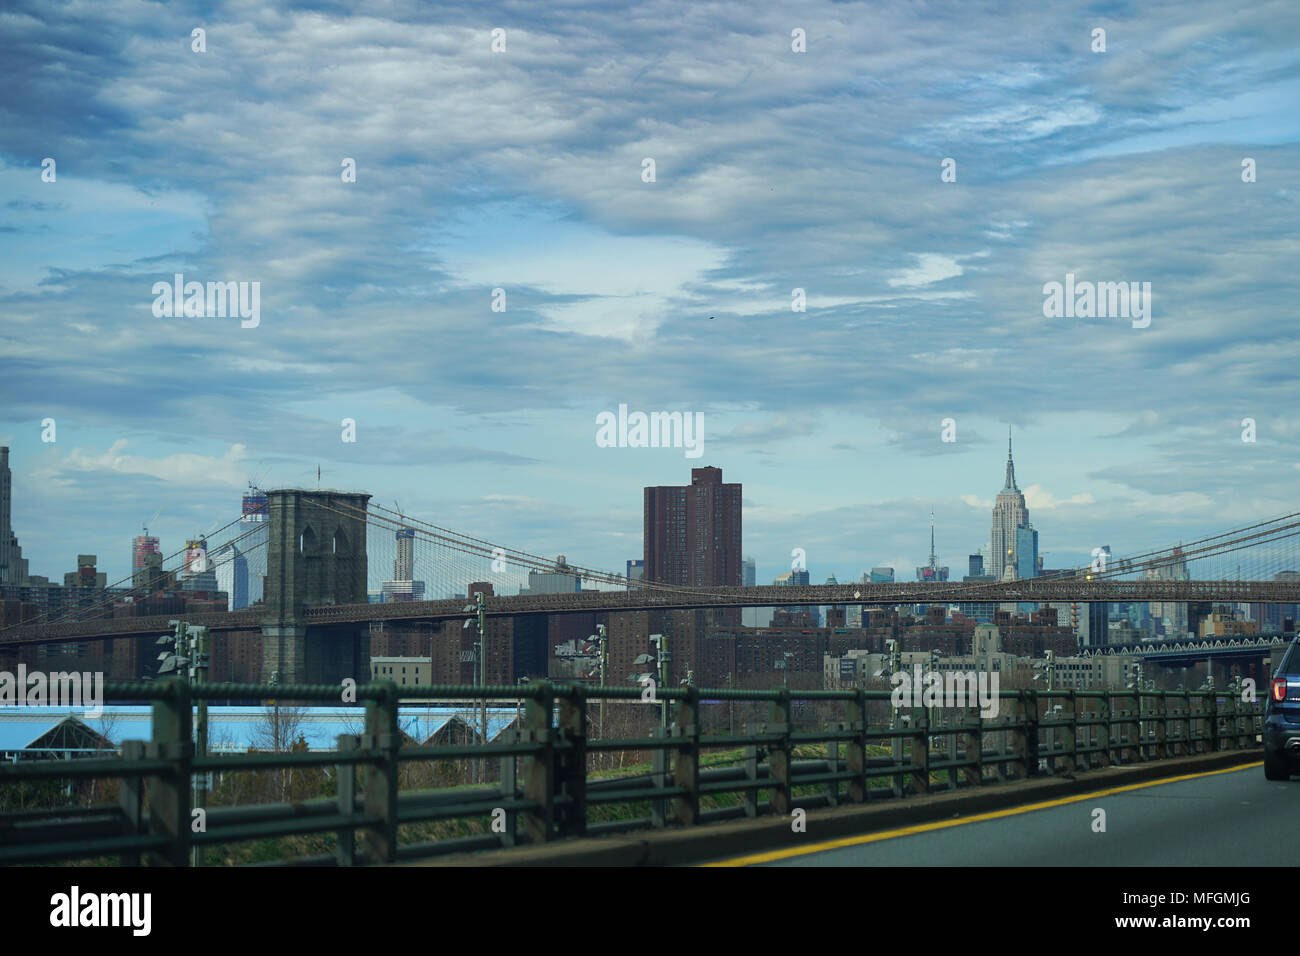 Ein Blick auf Manhattan und die Brooklyn Bridge, die in den Vereinigten Staaten. Aus einer Reihe von Fotos in den Vereinigten Staaten. Foto Datum: Mittwoch, 4. April Stockfoto